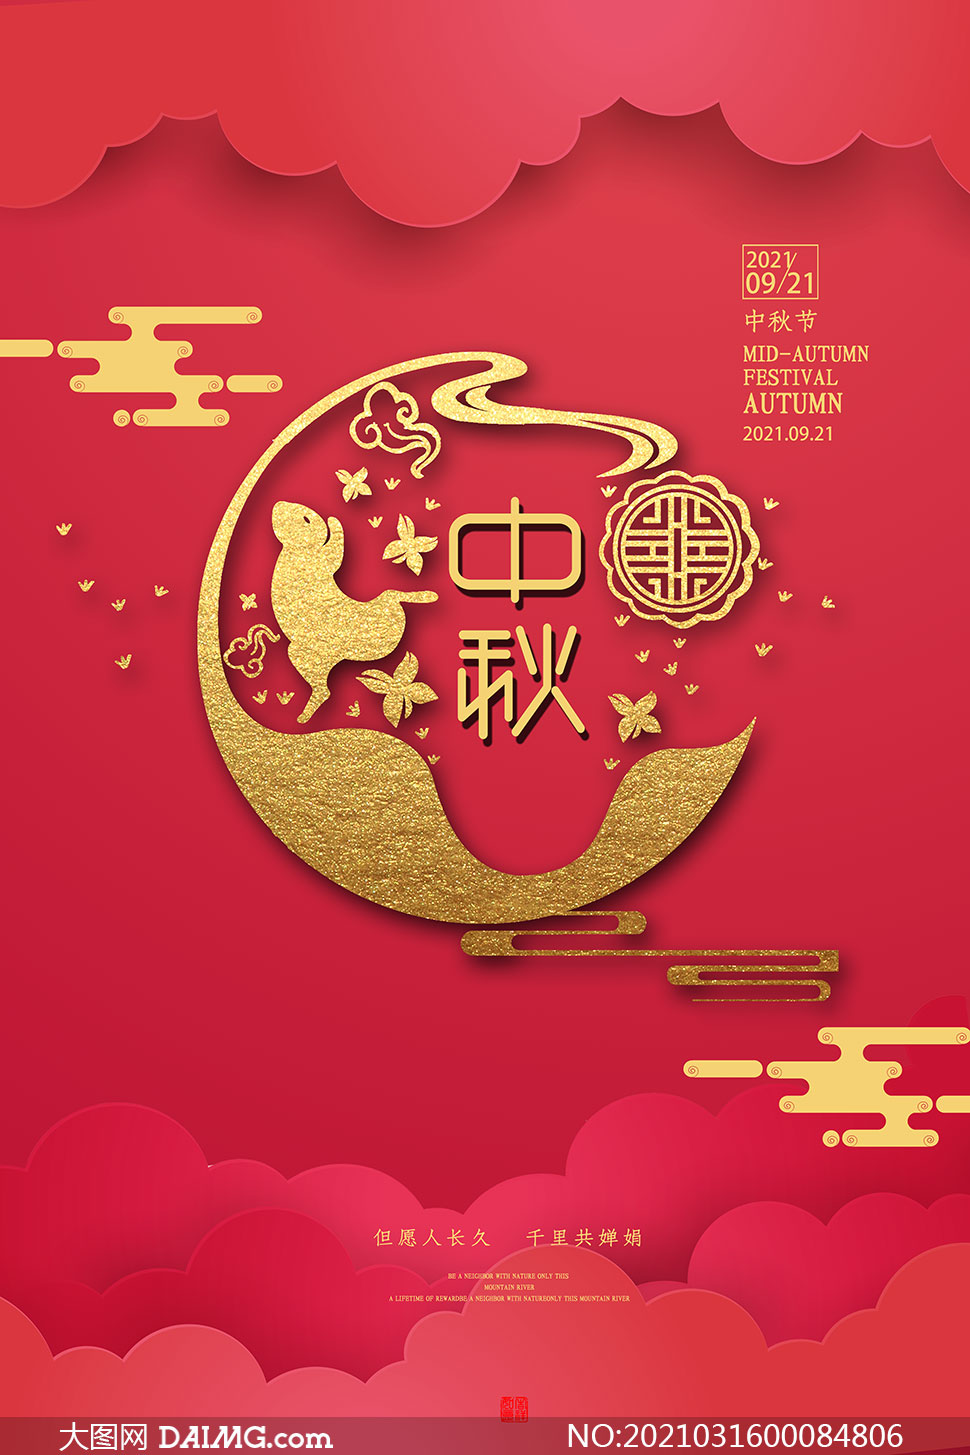 中秋节高档大气宣传海报设计psd素材